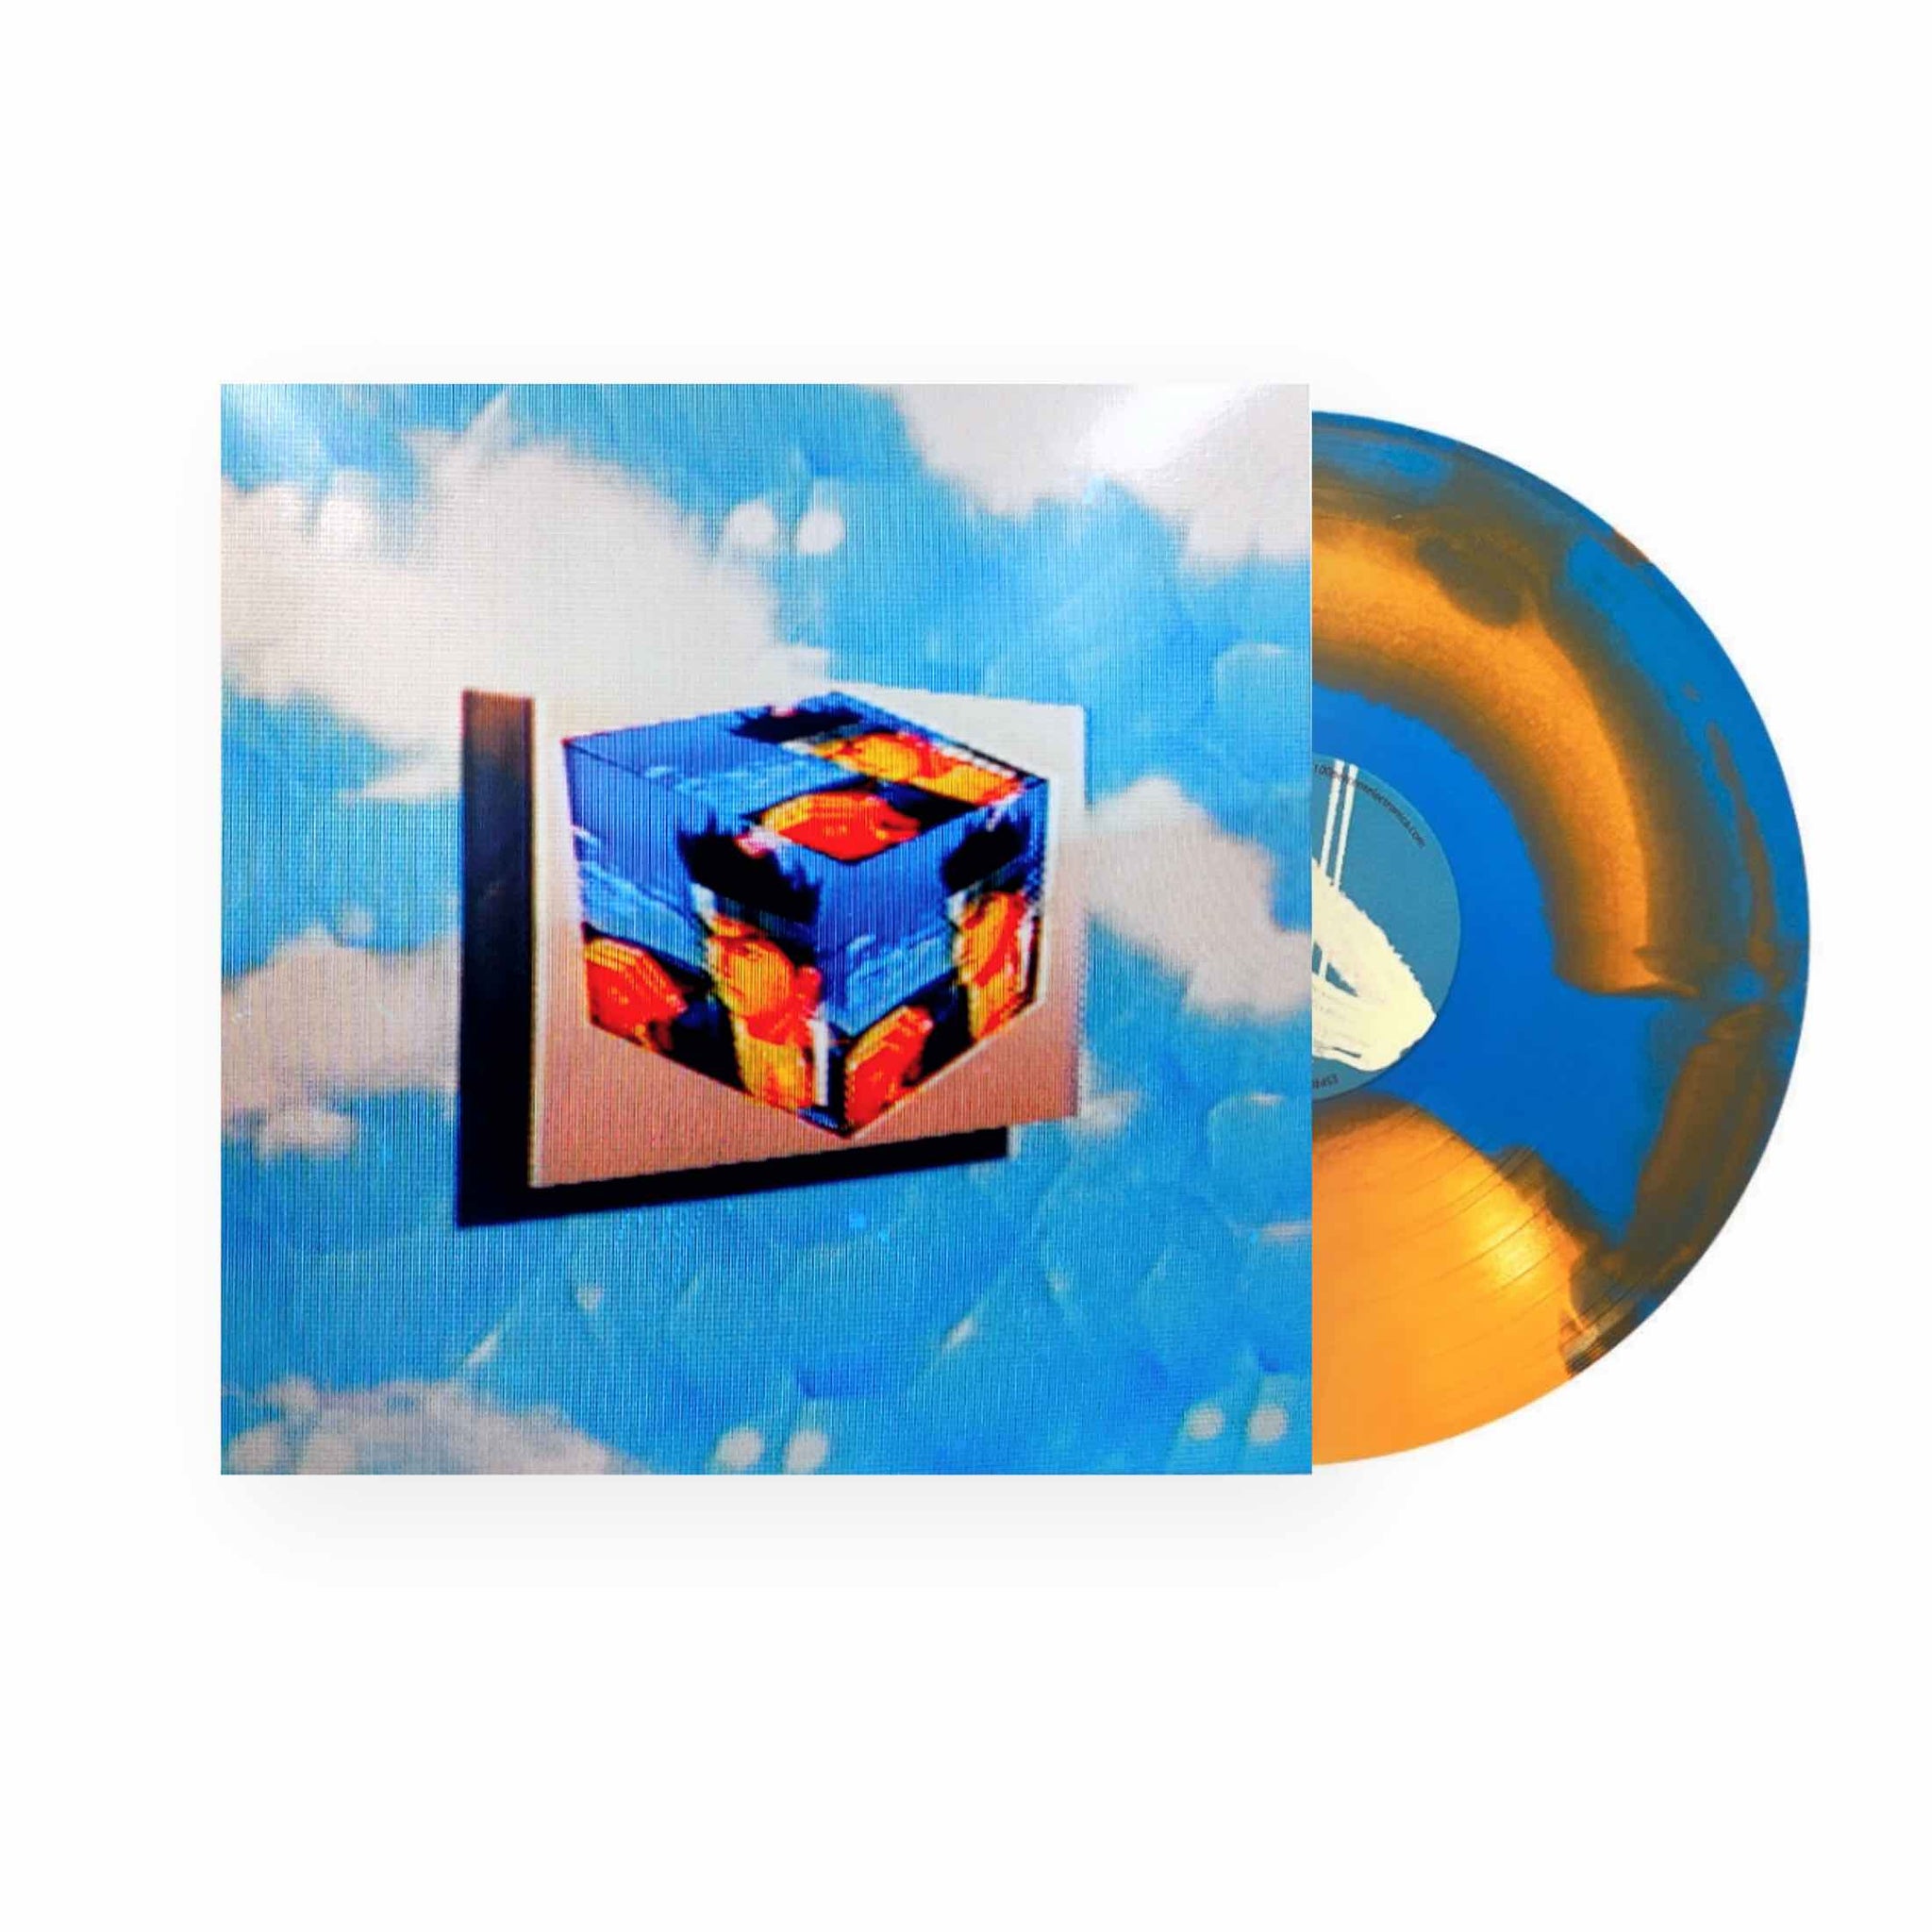 Esprit 空想 - Virtua.zip LP (Blue Orange  Vinyl)